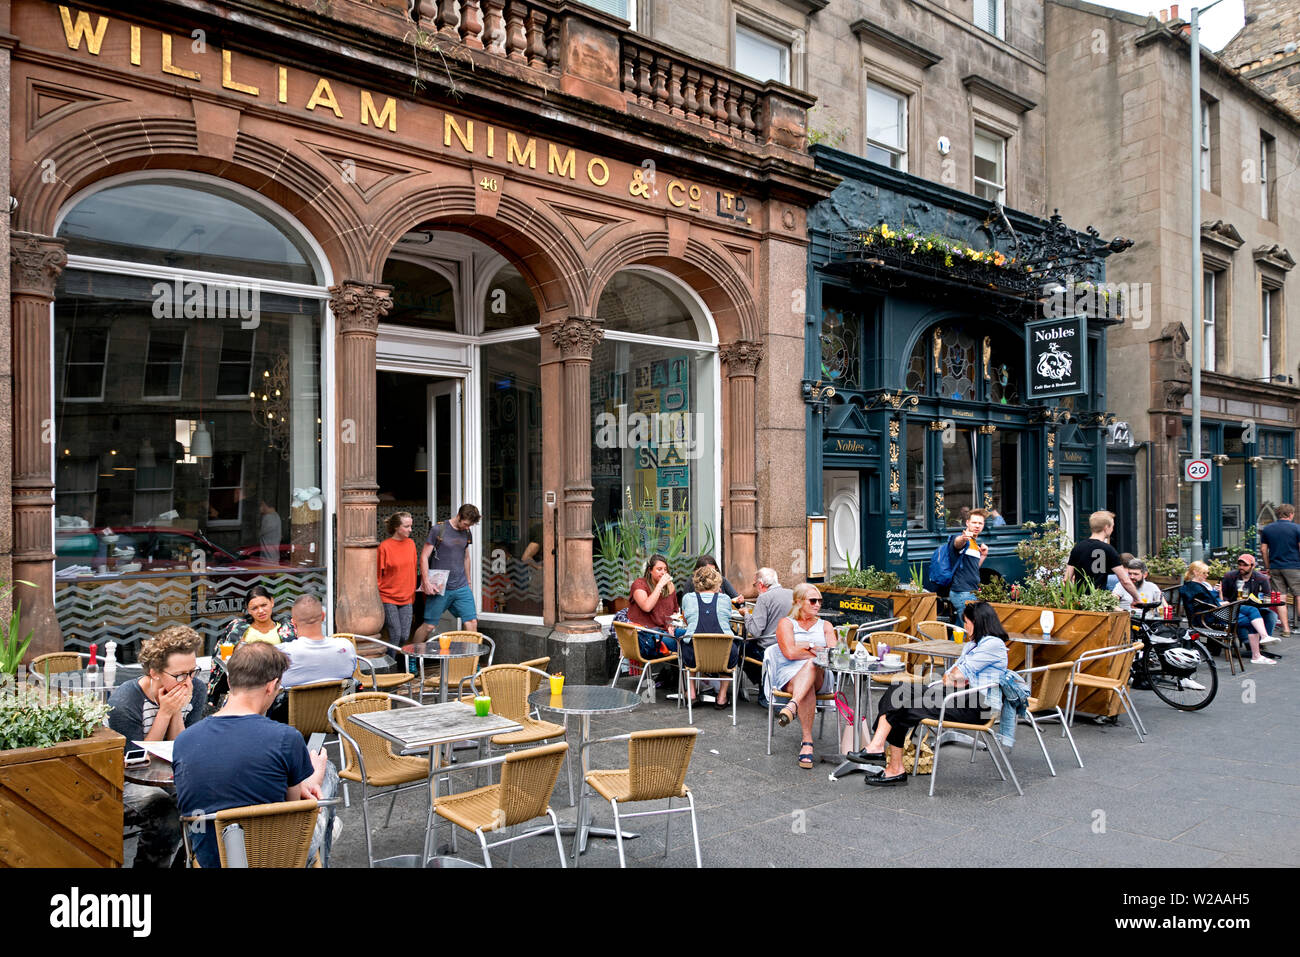 Rocksalt Cafe (mit original Beschilderungen für William Nimmo & Co) und Adlige Bar und Restaurant in Verfassung Street, Leith, Edinburgh, Schottland, Großbritannien. Stockfoto